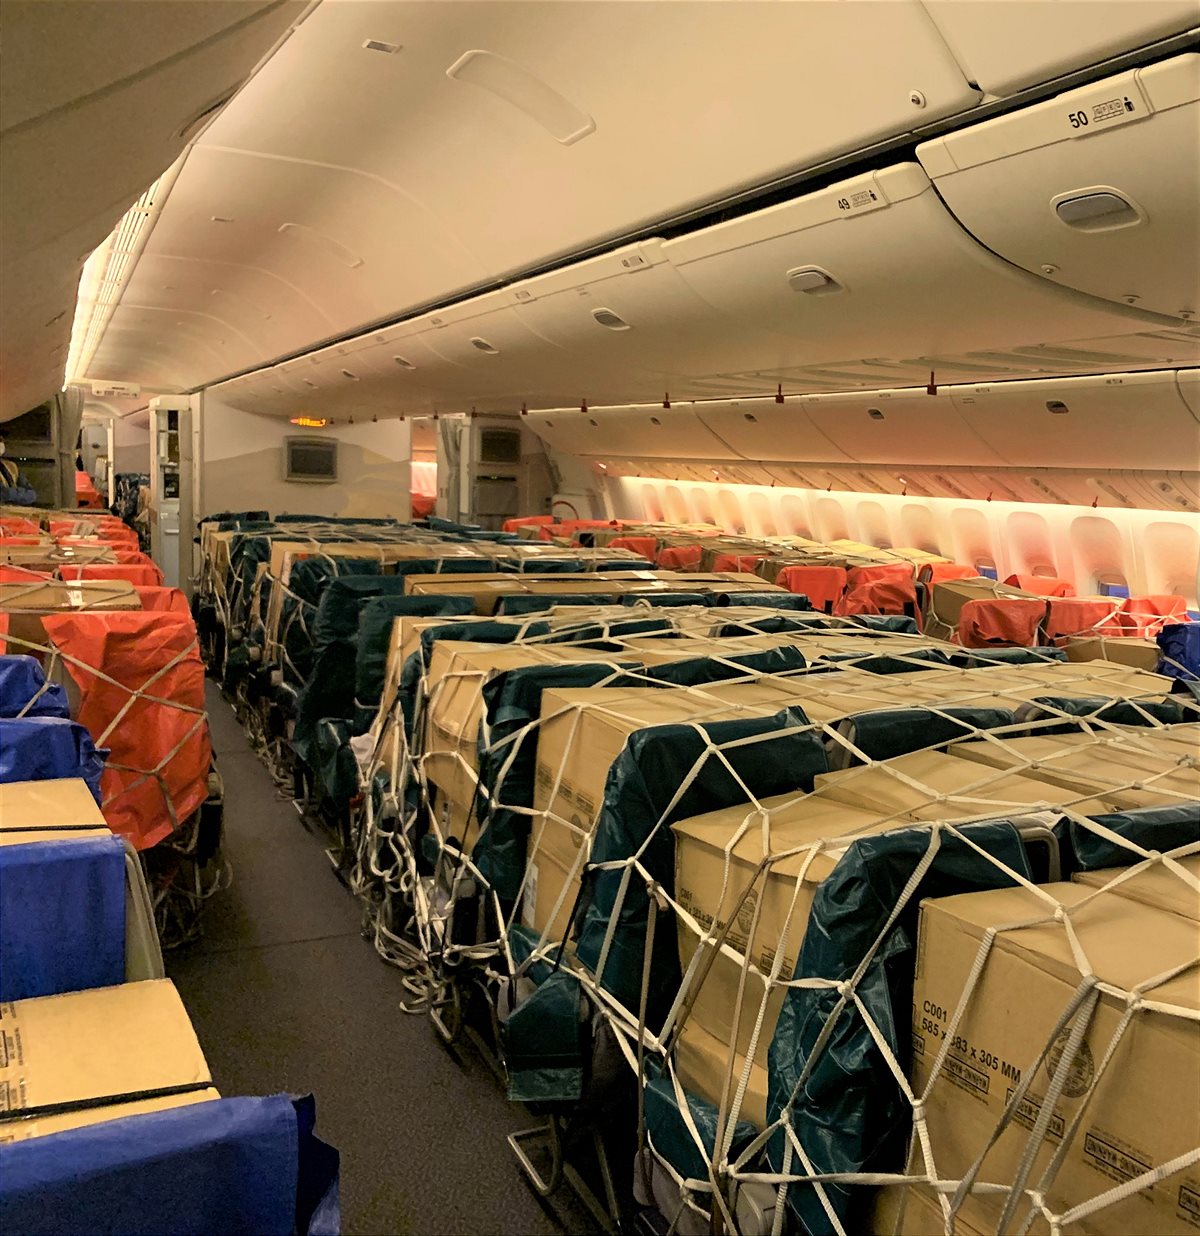 Emirates SkyCargo feiert ersten Jahrestag der Verladung lebenswichtiger Fracht auf den Sitzen und in den Gepäckfächern ihrer Boeing 777-300ER Passagierflugzeuge